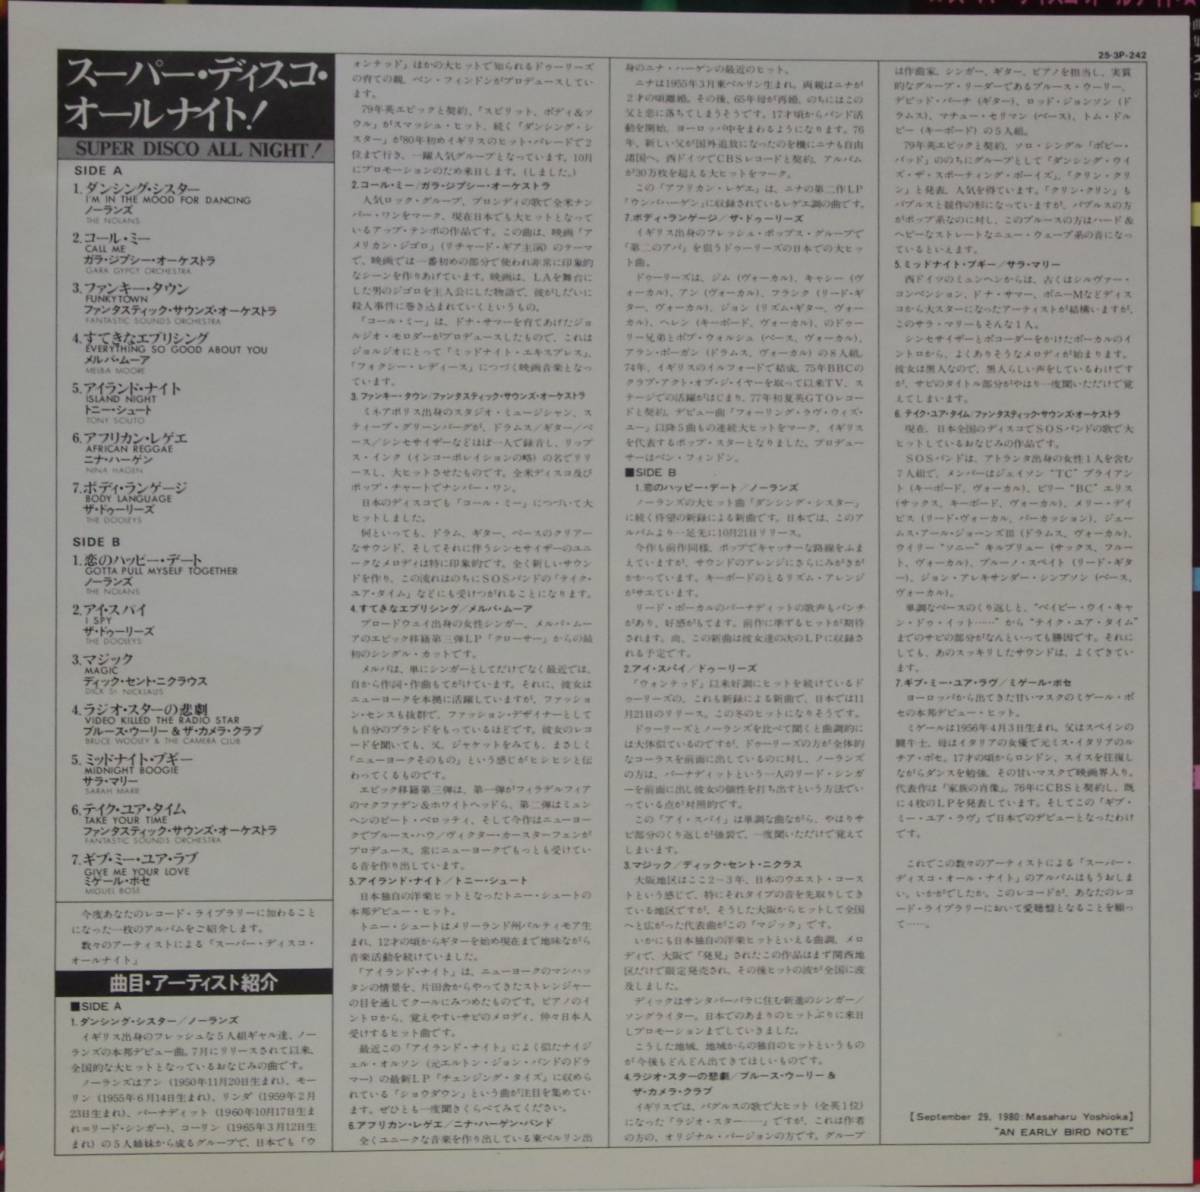 中古LPレコード簡易洗浄済み：ノーランズ/ザ・ドゥーリーズ / SUPER DISCO ALL NIGHT(国内盤：25・3P-242)_画像3